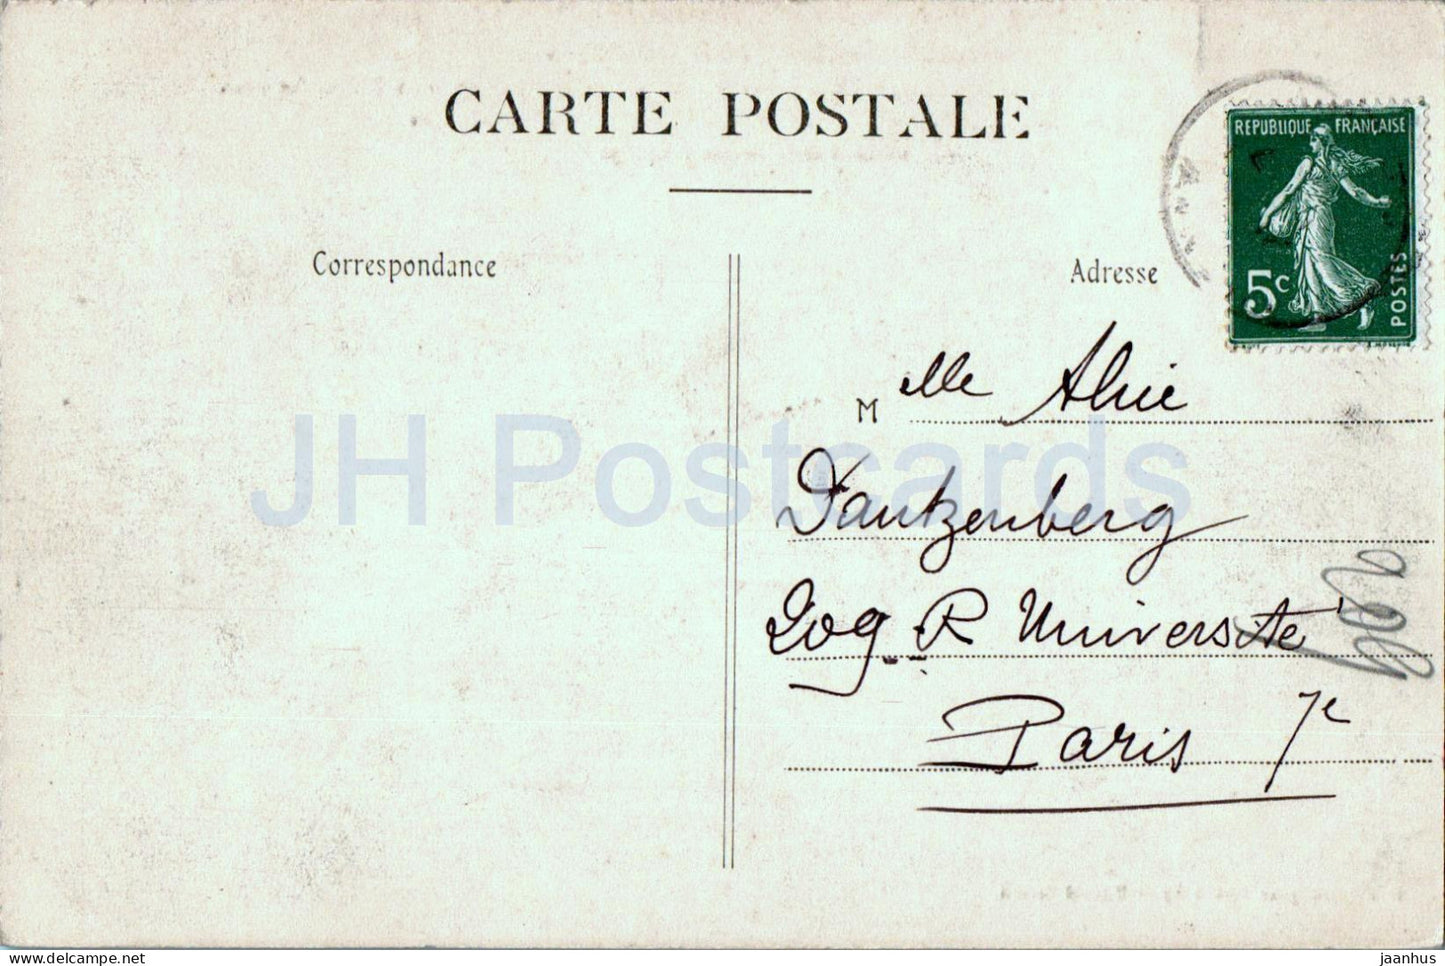 Mareuil sur Ay - Les Goisses - Curieux effet - alte Postkarte - Frankreich - gebraucht 